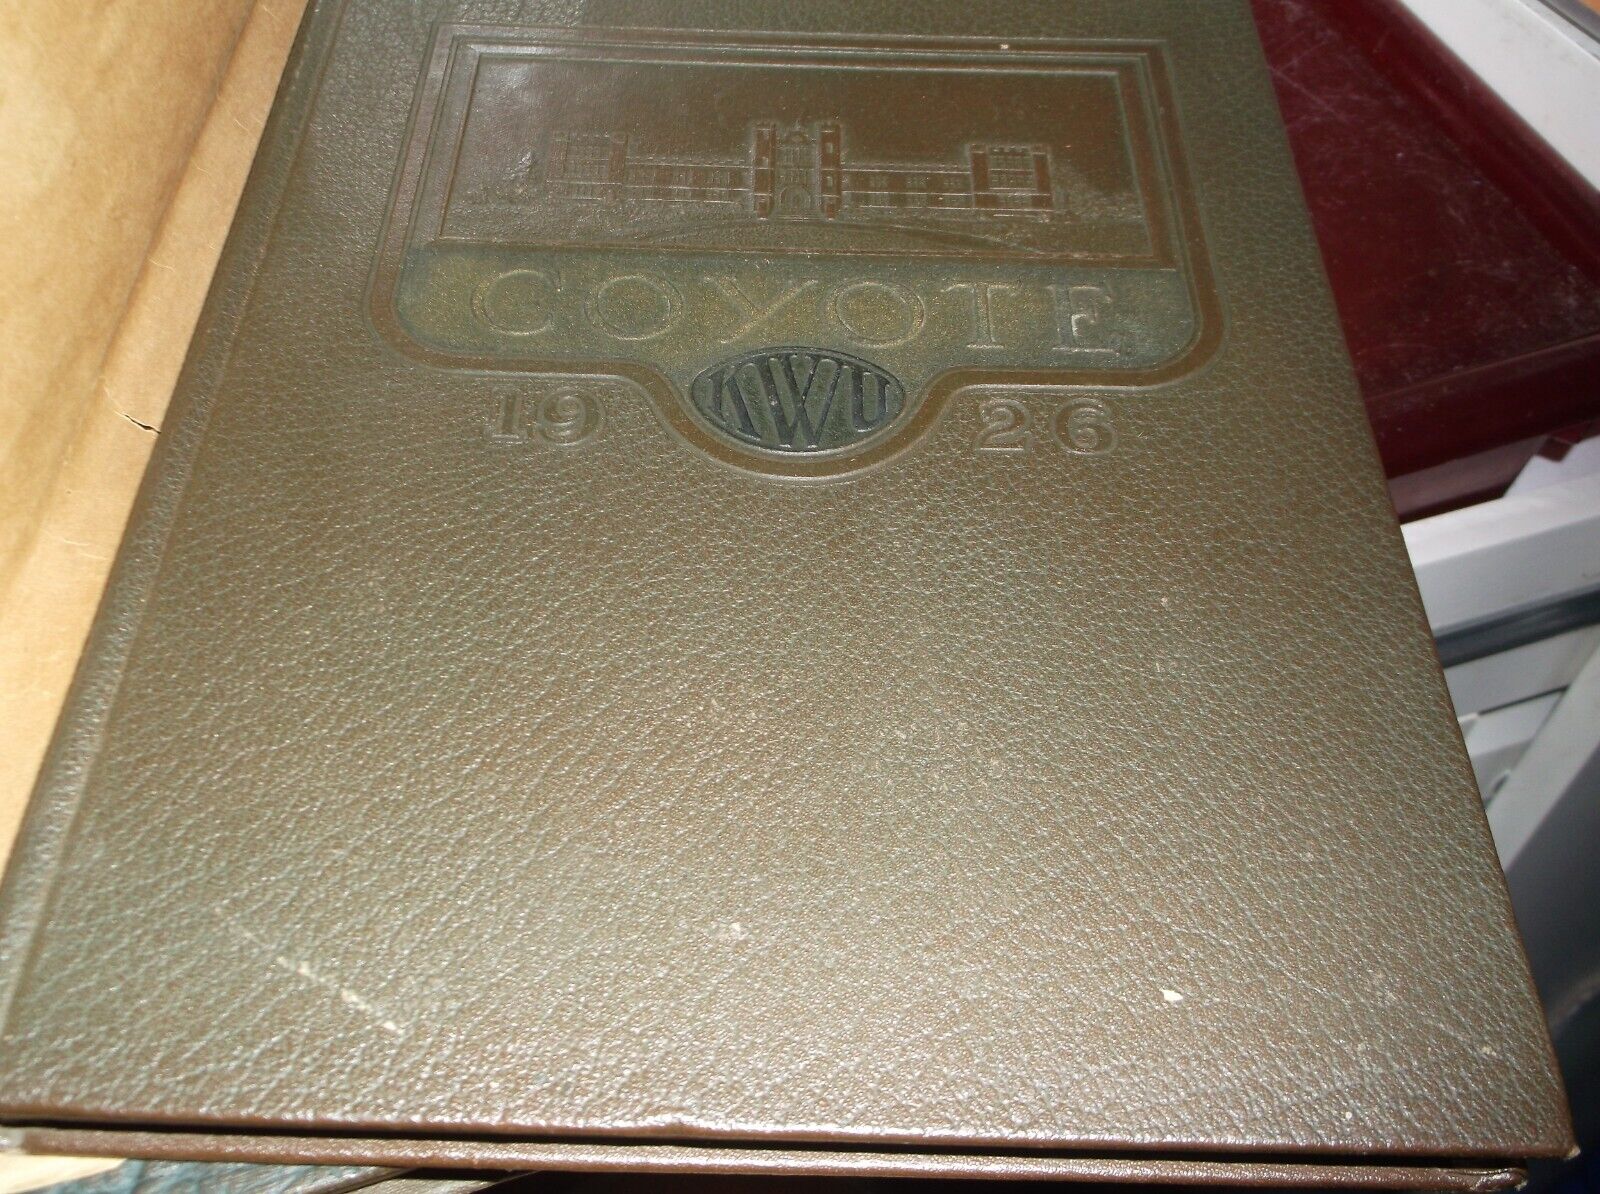 1928 Yearbook Kansas Wesleyan University Salina, Kansas The Coyote -NEW FREE SHI